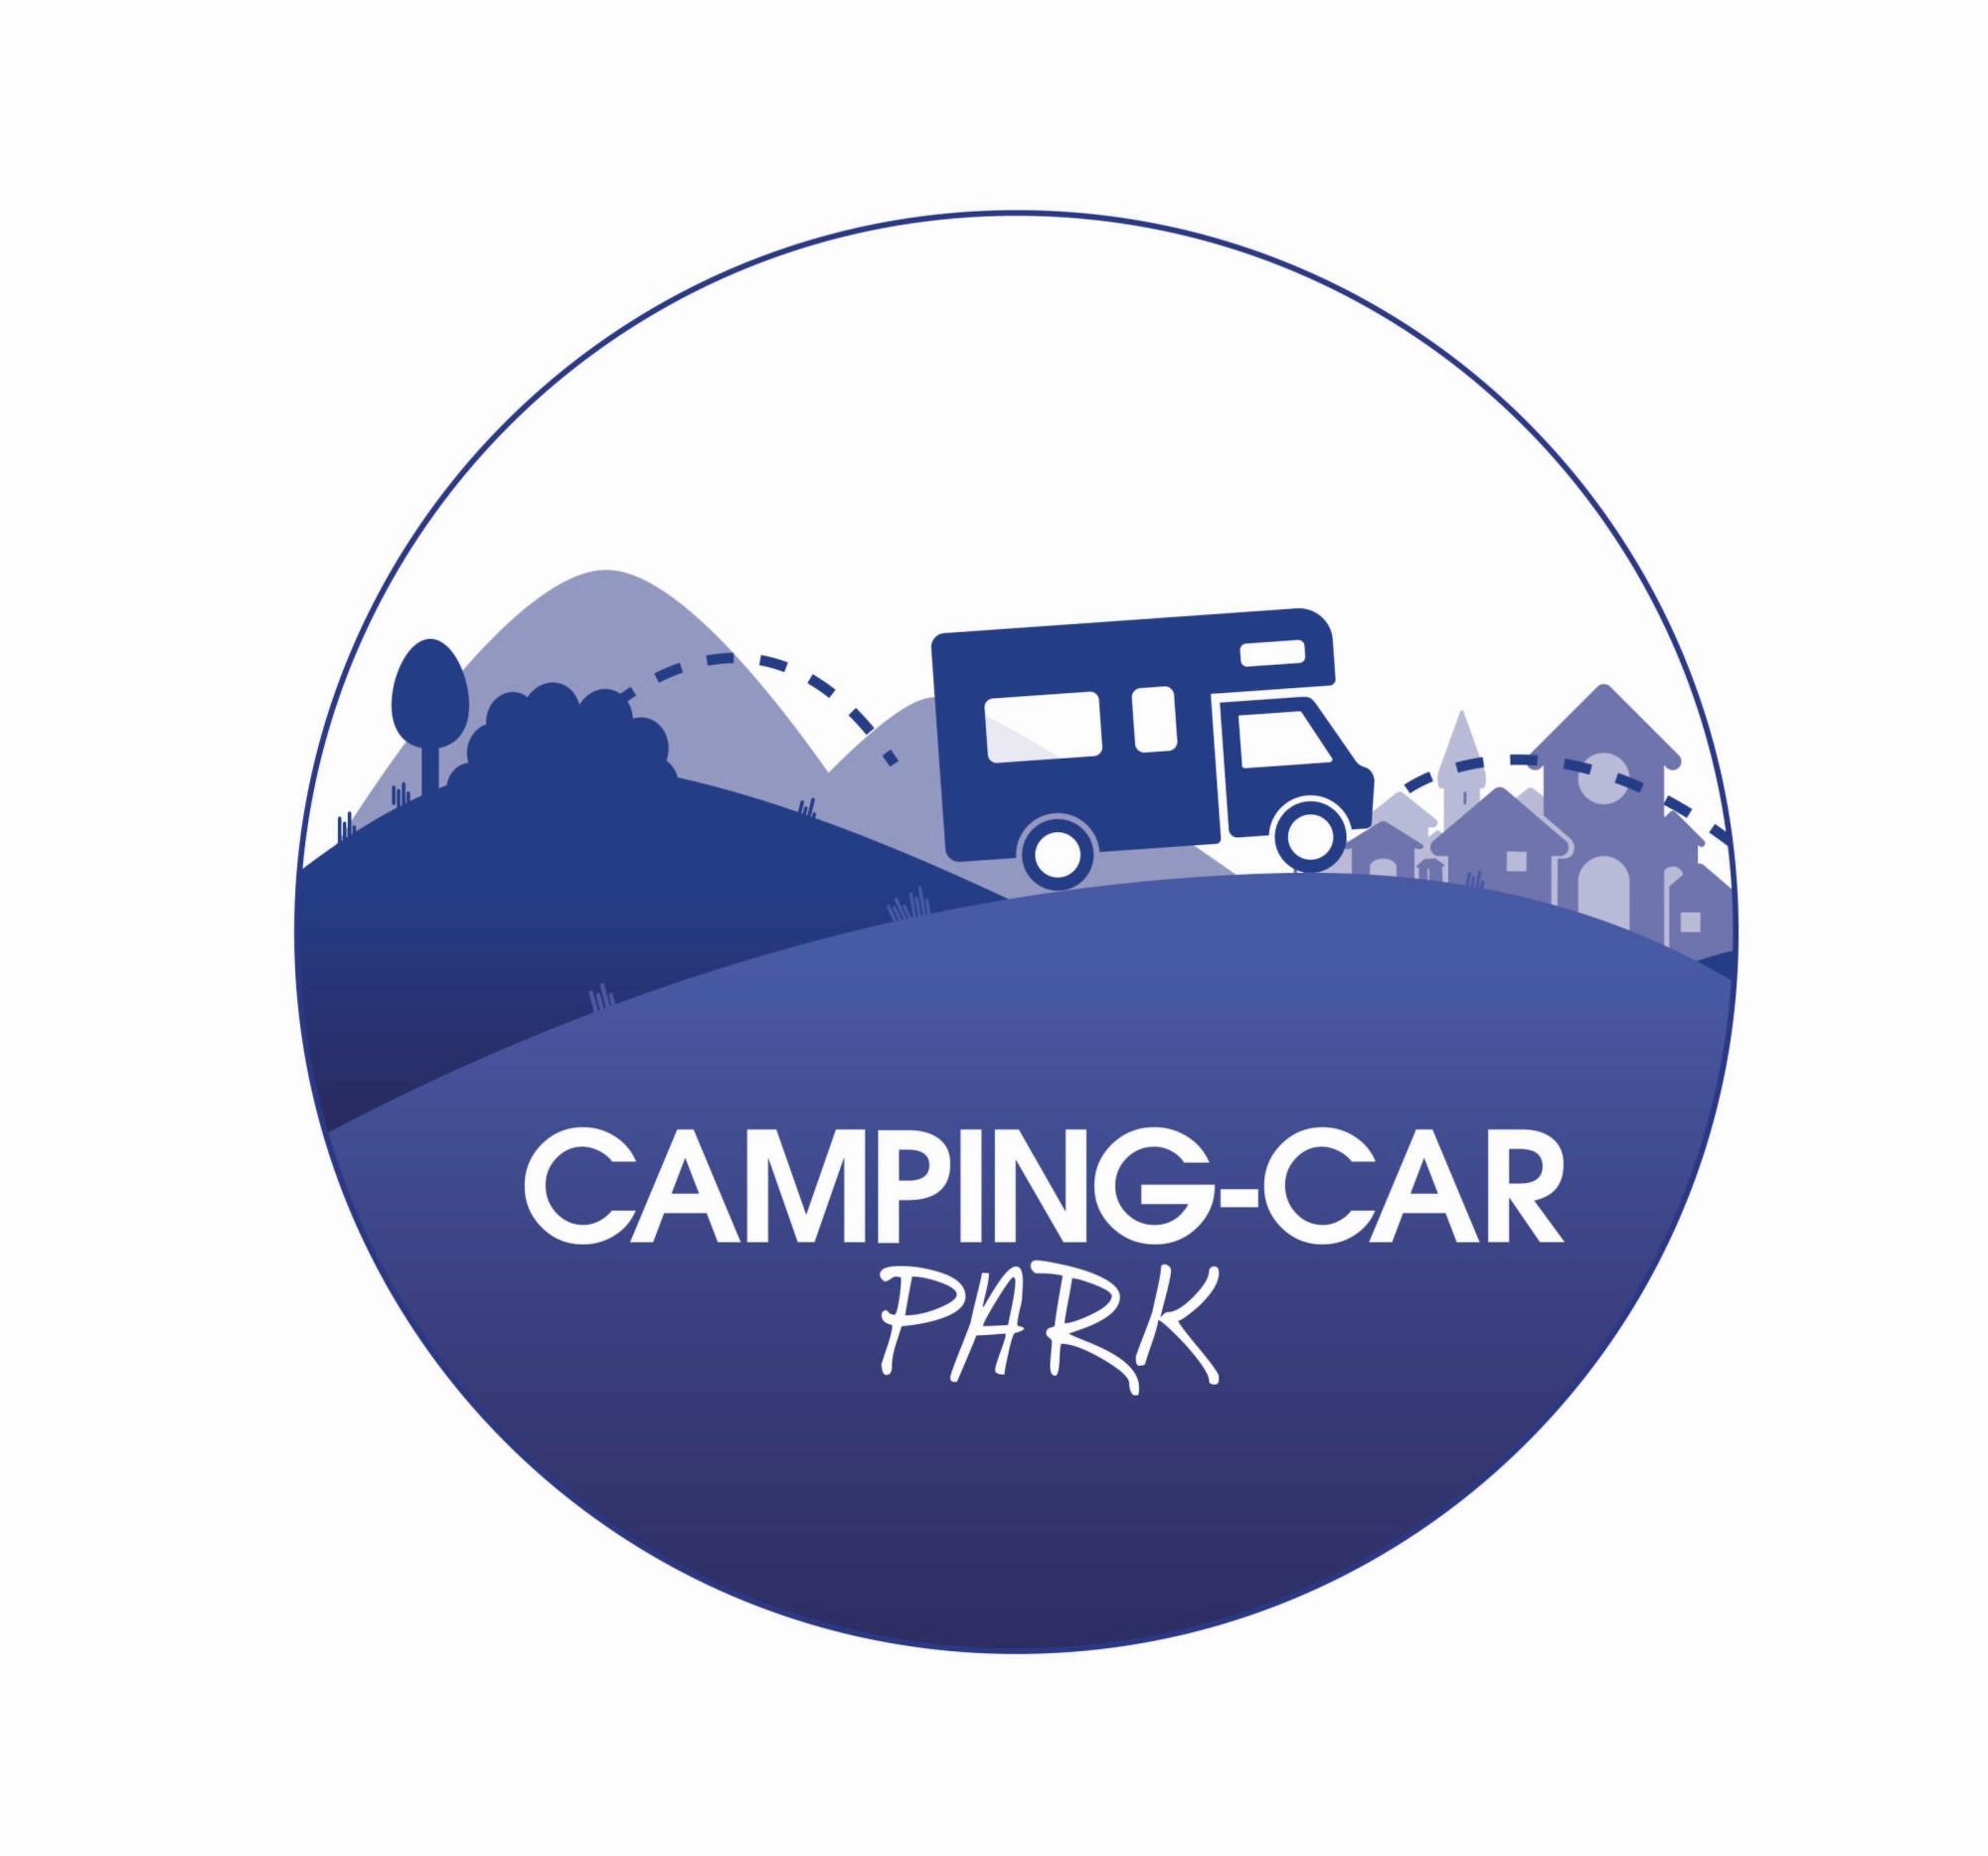 Camping-car Park L'argentière La Bessée